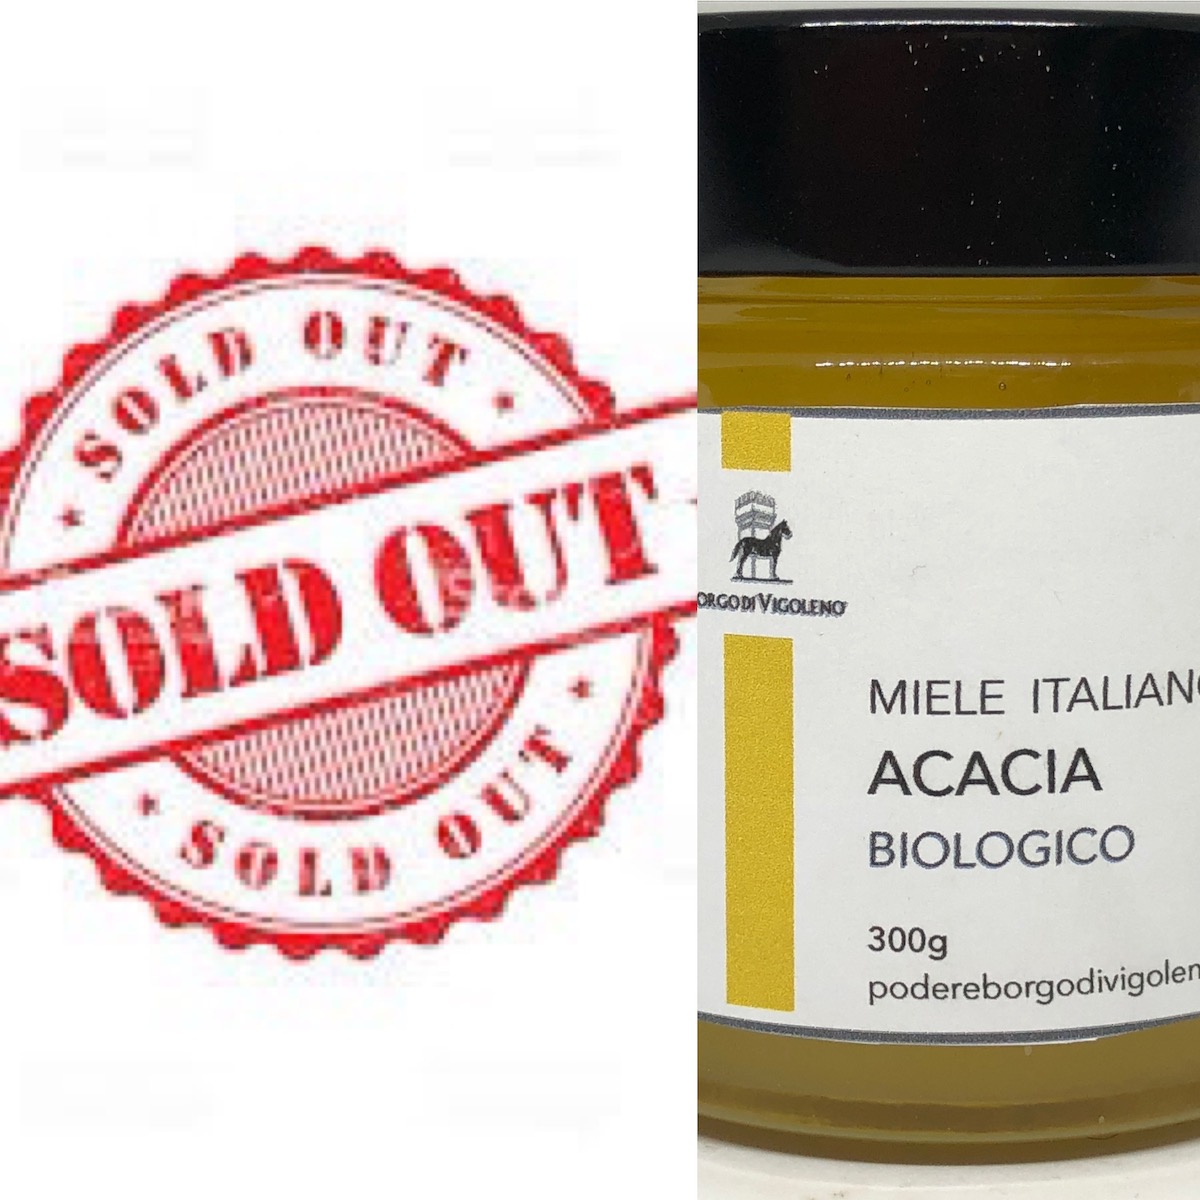 008 - Miele Acacia Biologico 300g